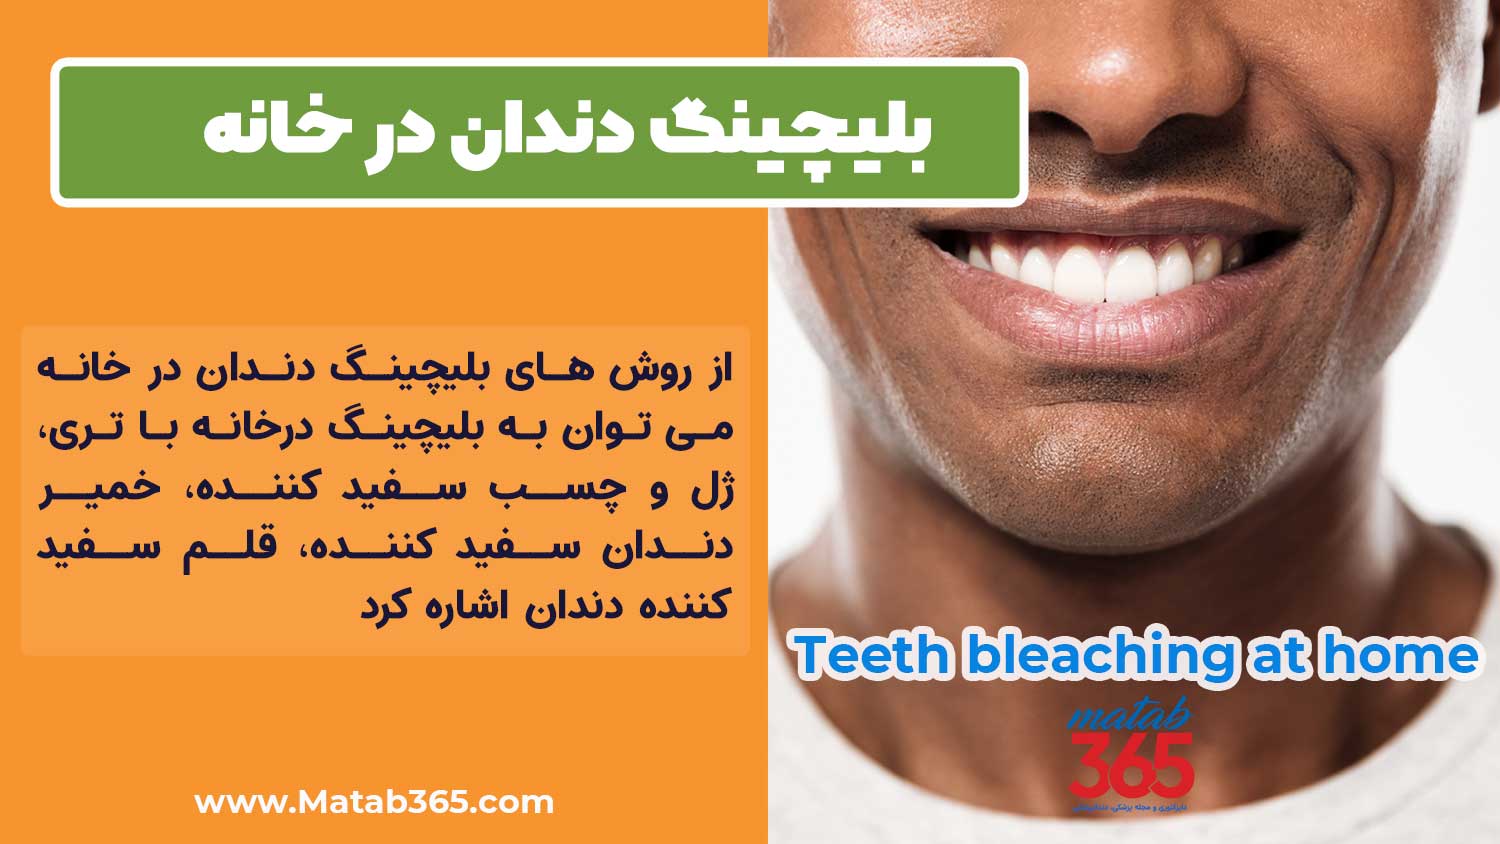 روش های بلیچینگ دندان در خانه